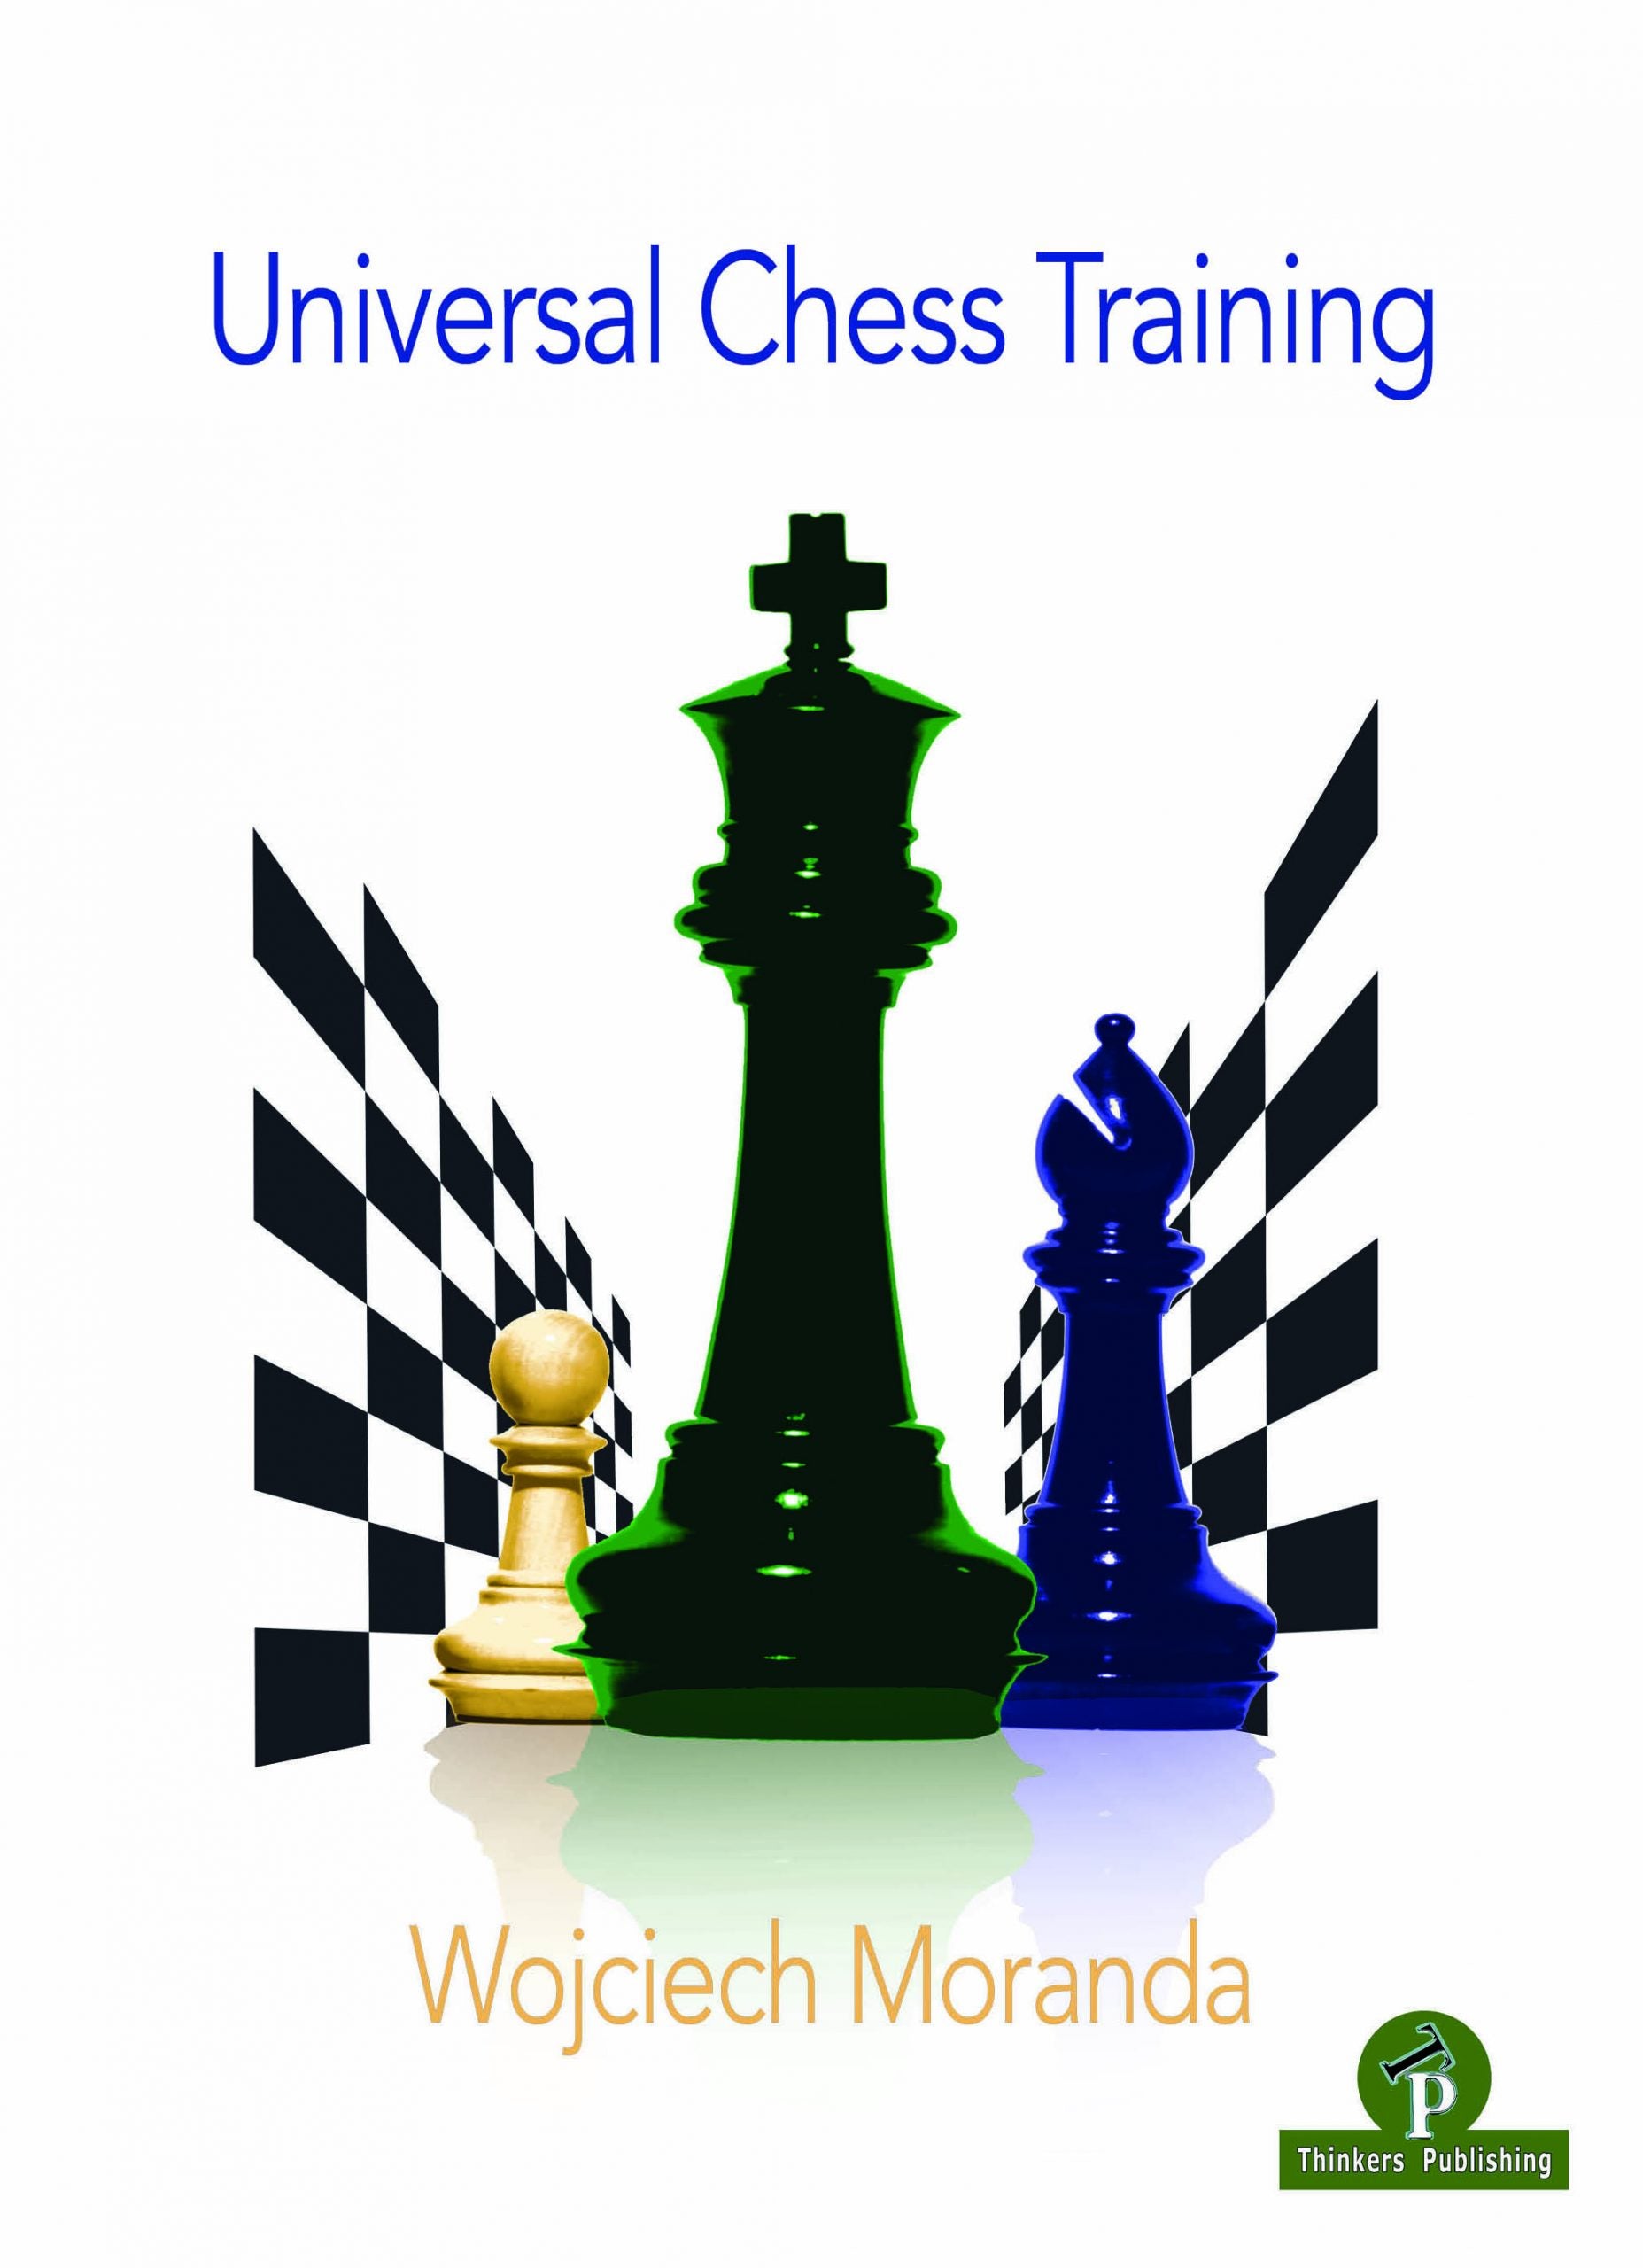 Moranda: Universal Chess Training